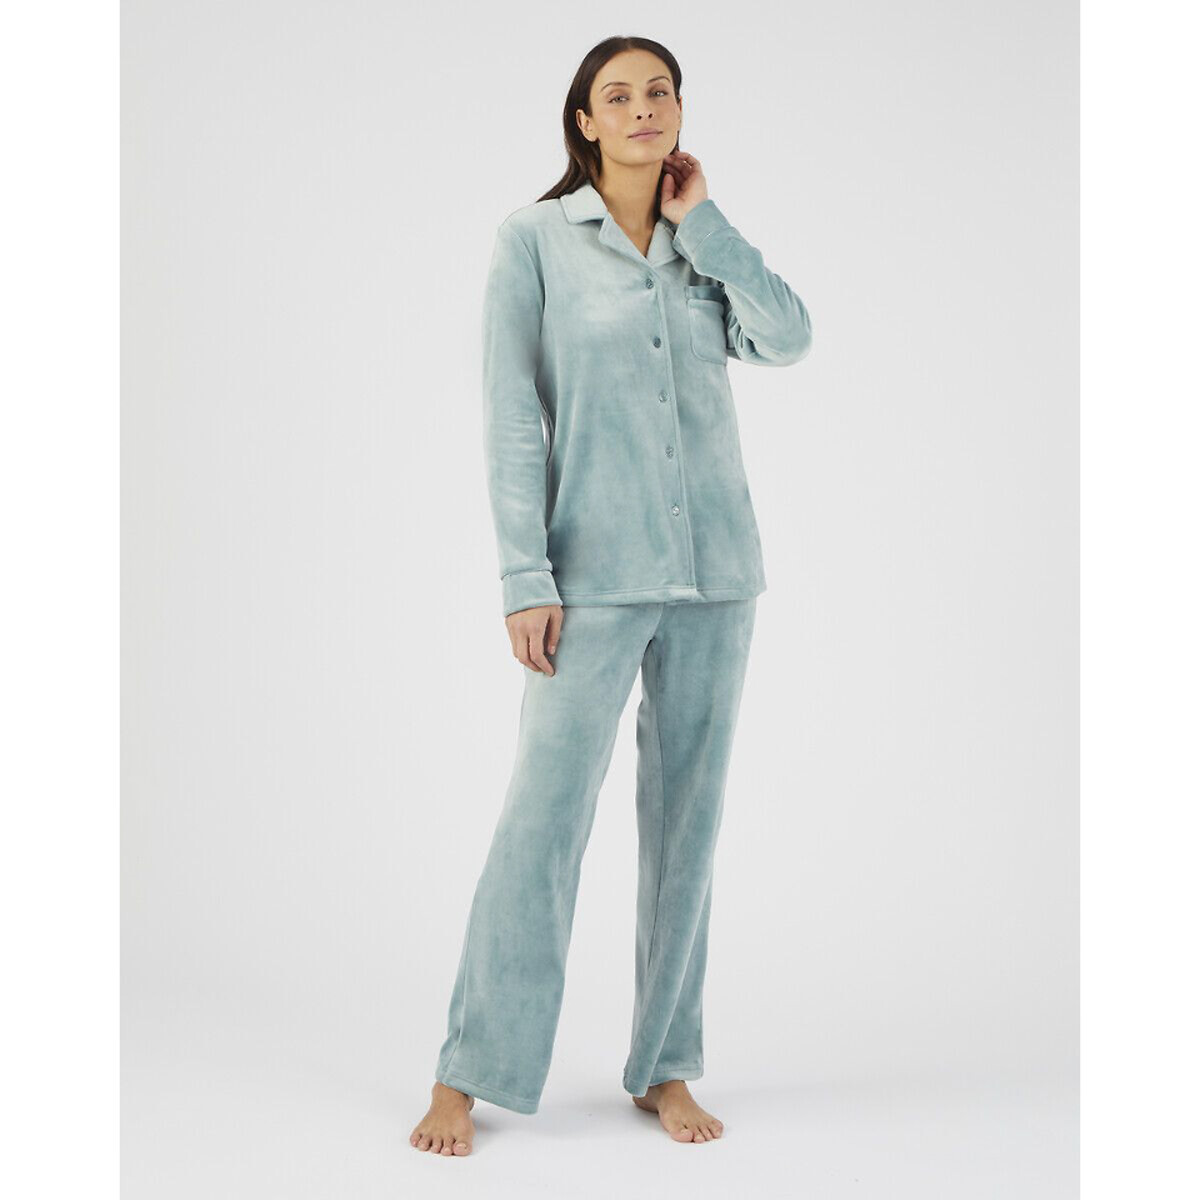 Комплект пижамный из термолактила La Redoute XS синий комплект пижамный из жаккарда la redoute xs синий